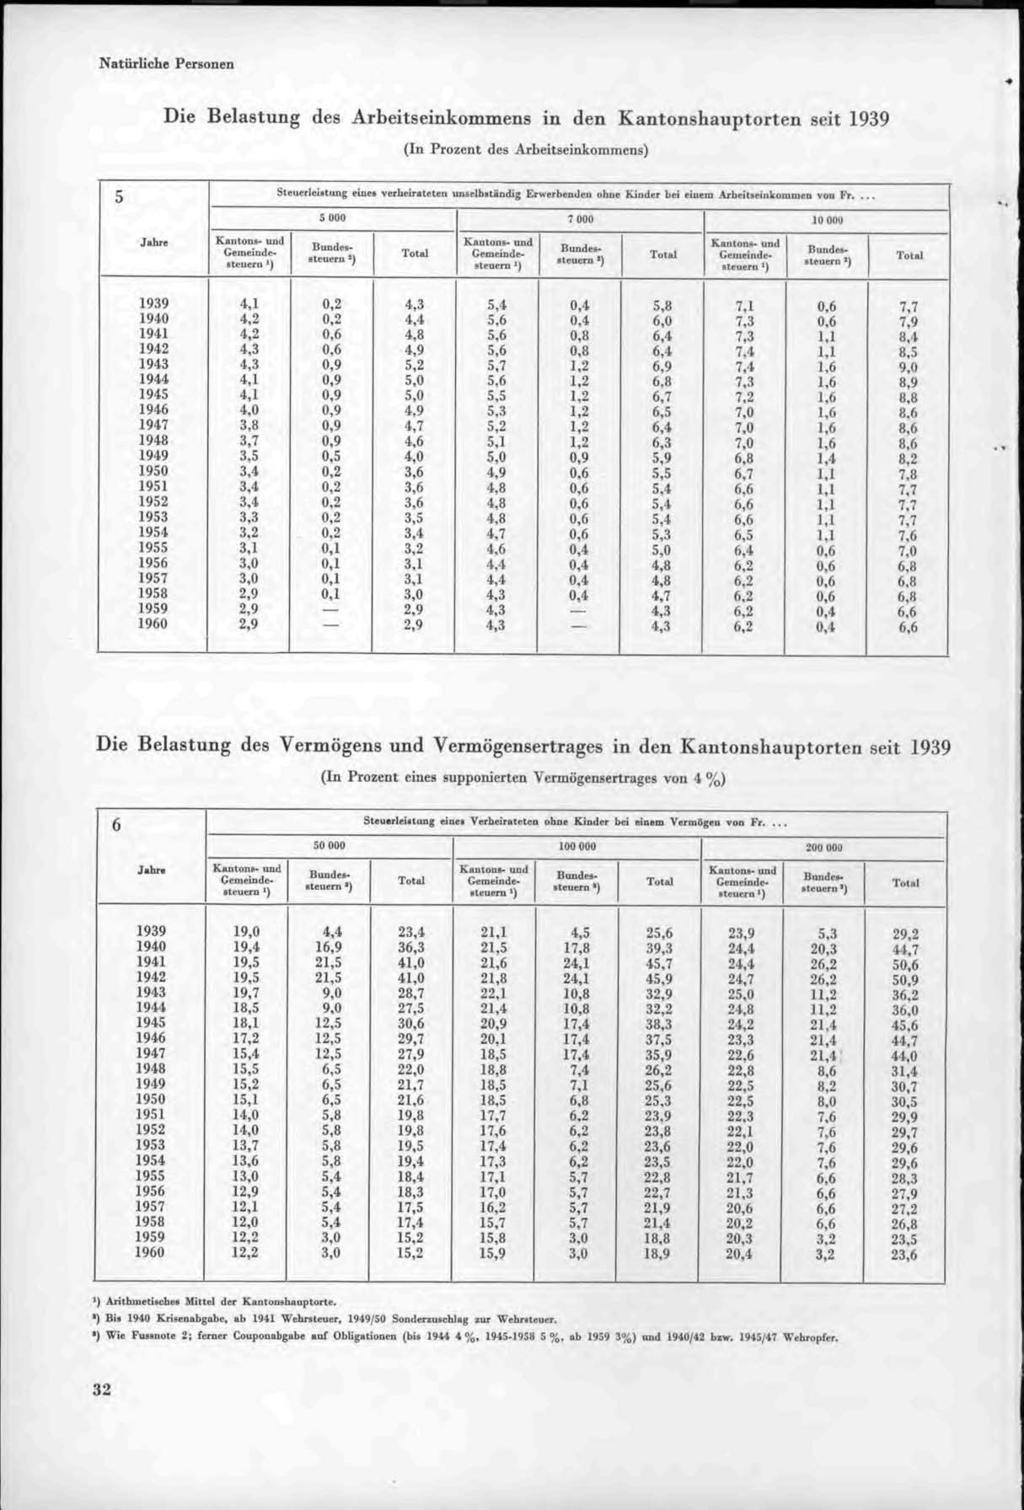 Natürliche Personen Die Belastung des Arbeitseinkommens in den Kantonshauptorten seit 1939 (In Prozent des Arbeitseinkommens) 5 St( uerleimung eiocs verheirateten unselbilandig Erwerbenden ohne